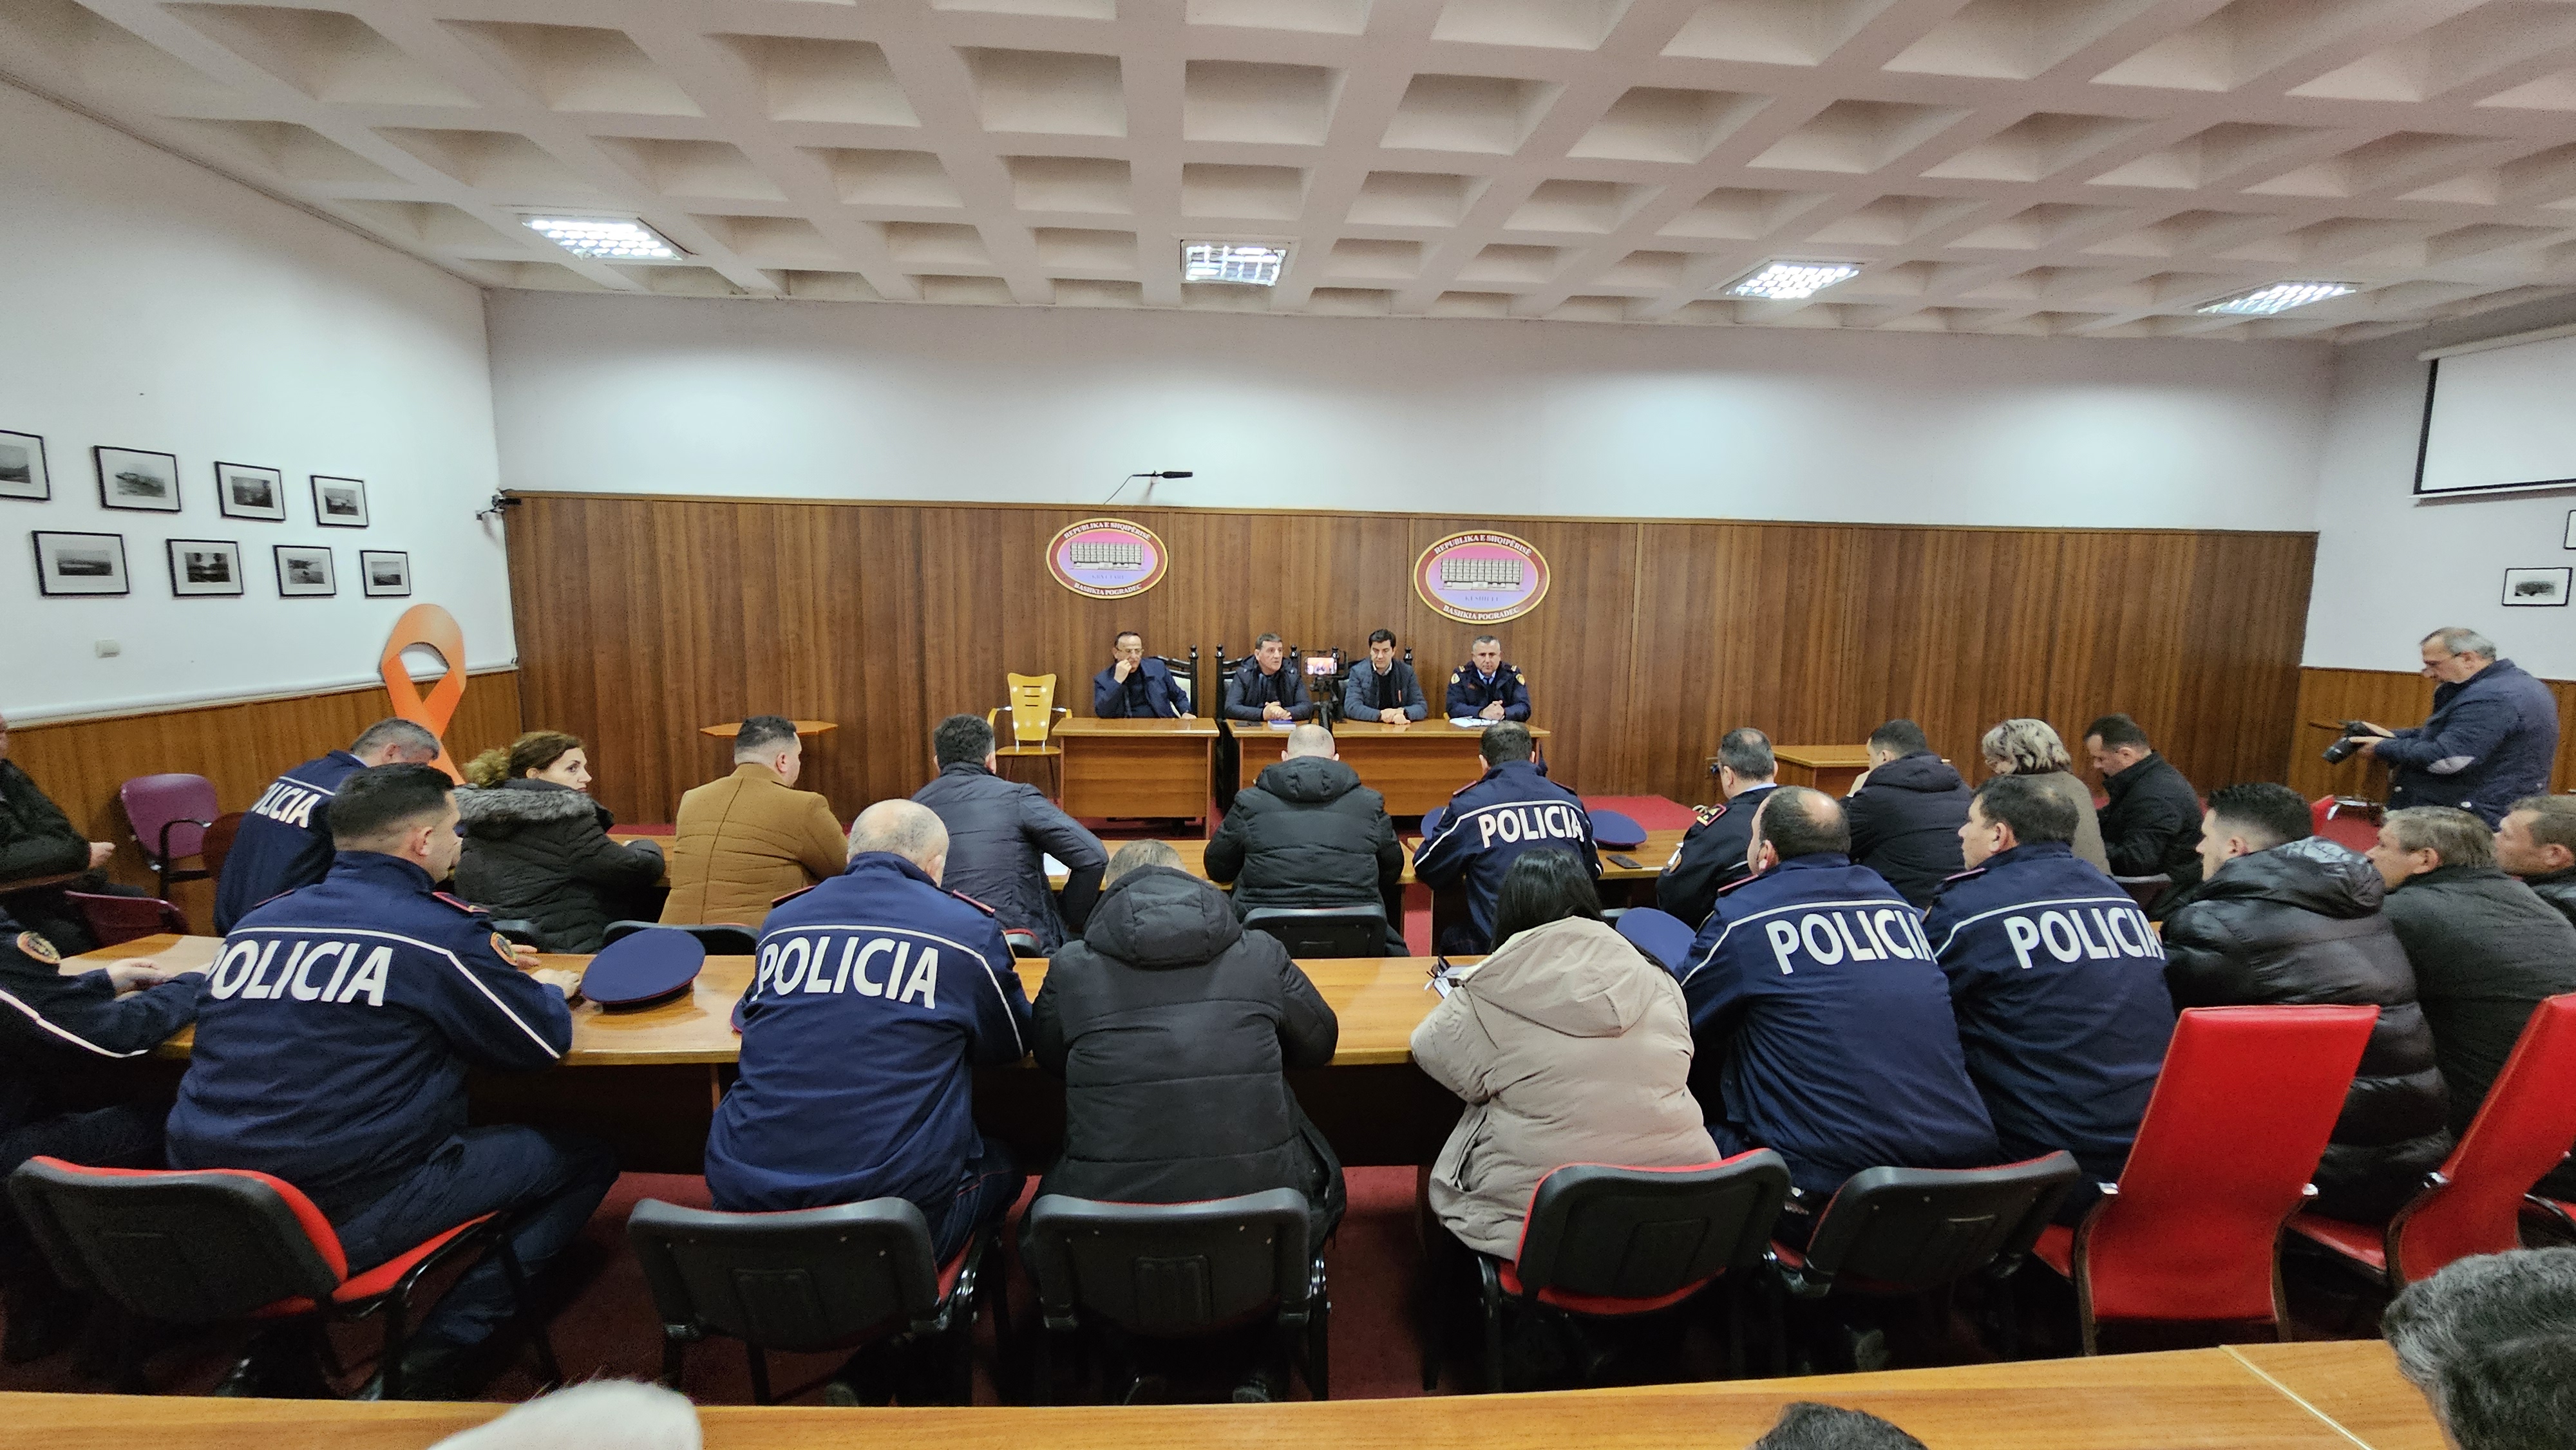 Takim antikanabis në Pogradec, ulje drastike e fenomenit kriminal